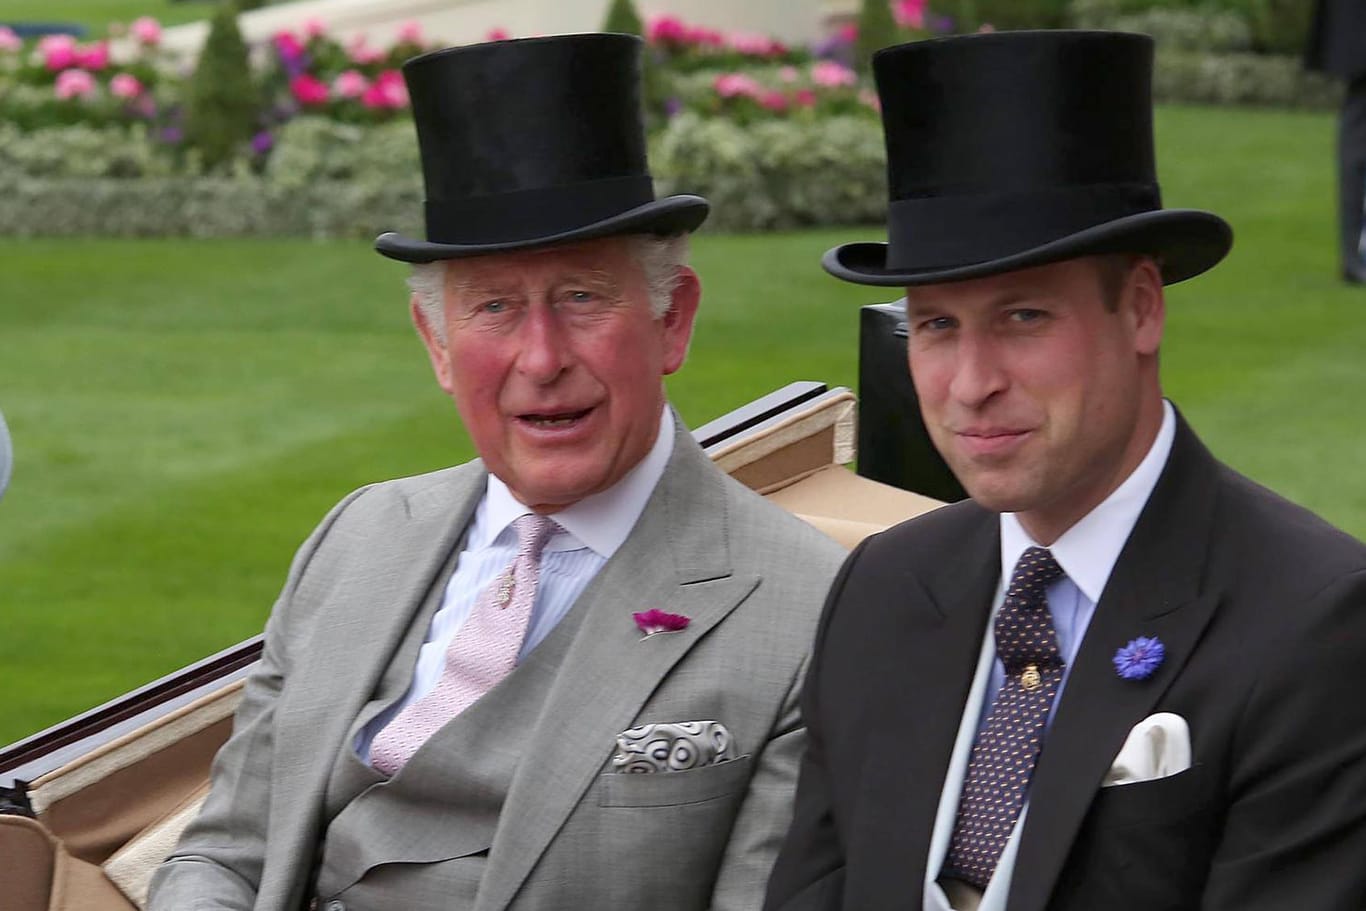 Papa und Sohn: Prinz Charles und Prinz William, hier bei einer gemeinsamen Kutschfahrt im Juni 2019 in Berkshire, England.